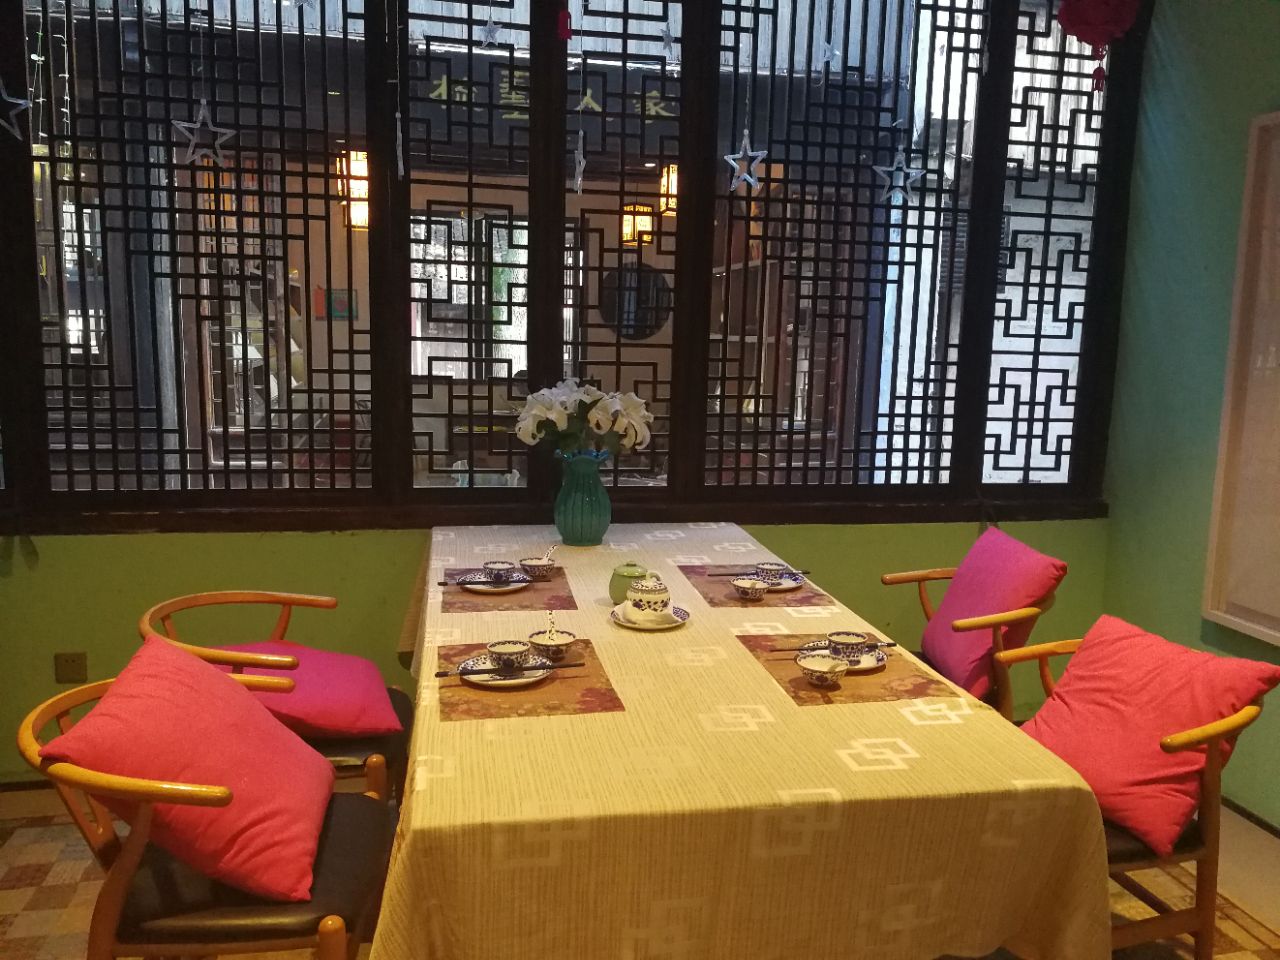 2021周庄花间堂桔梗餐厅美食餐厅,环境极佳,服务不错,菜式略